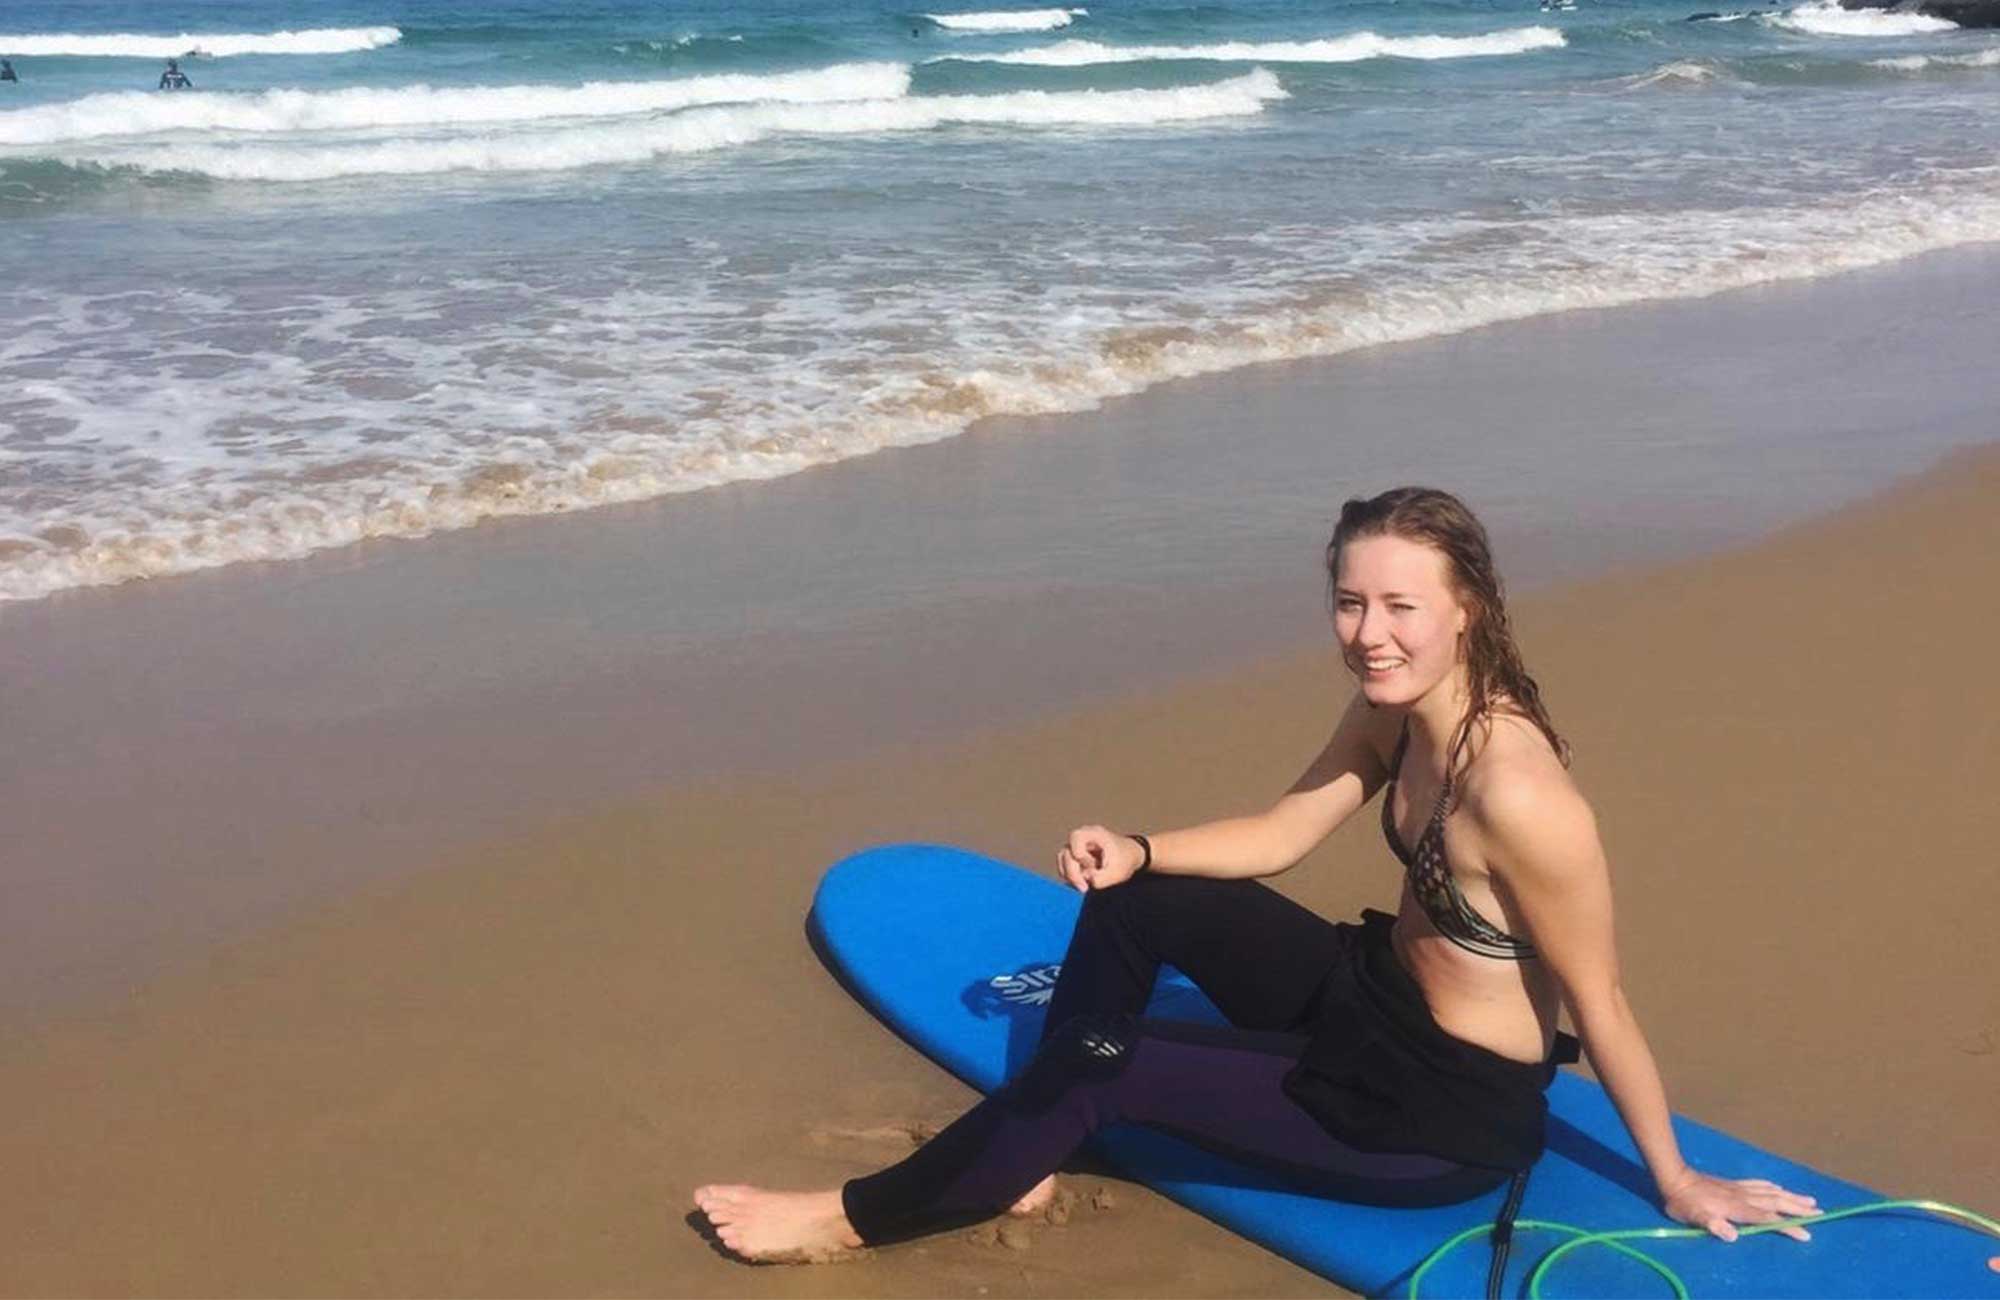 elin på en surfbräda under sitt sabbatsår efter gymnasiet i australien